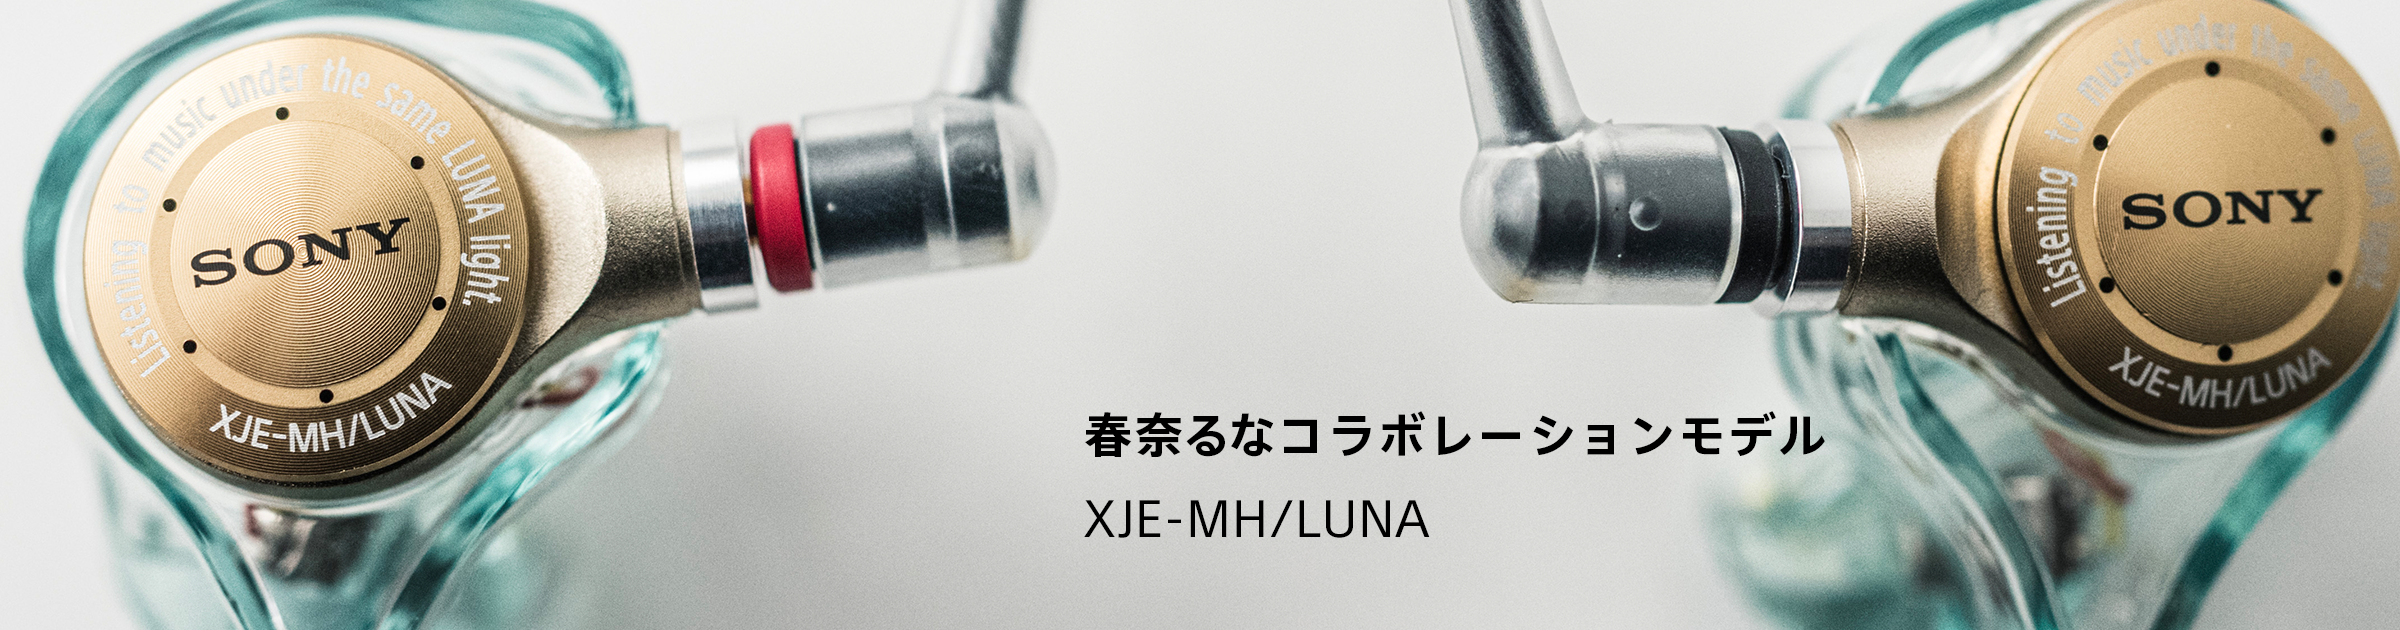 春奈るなコラボレーションモデル XJE-MH/LUNA